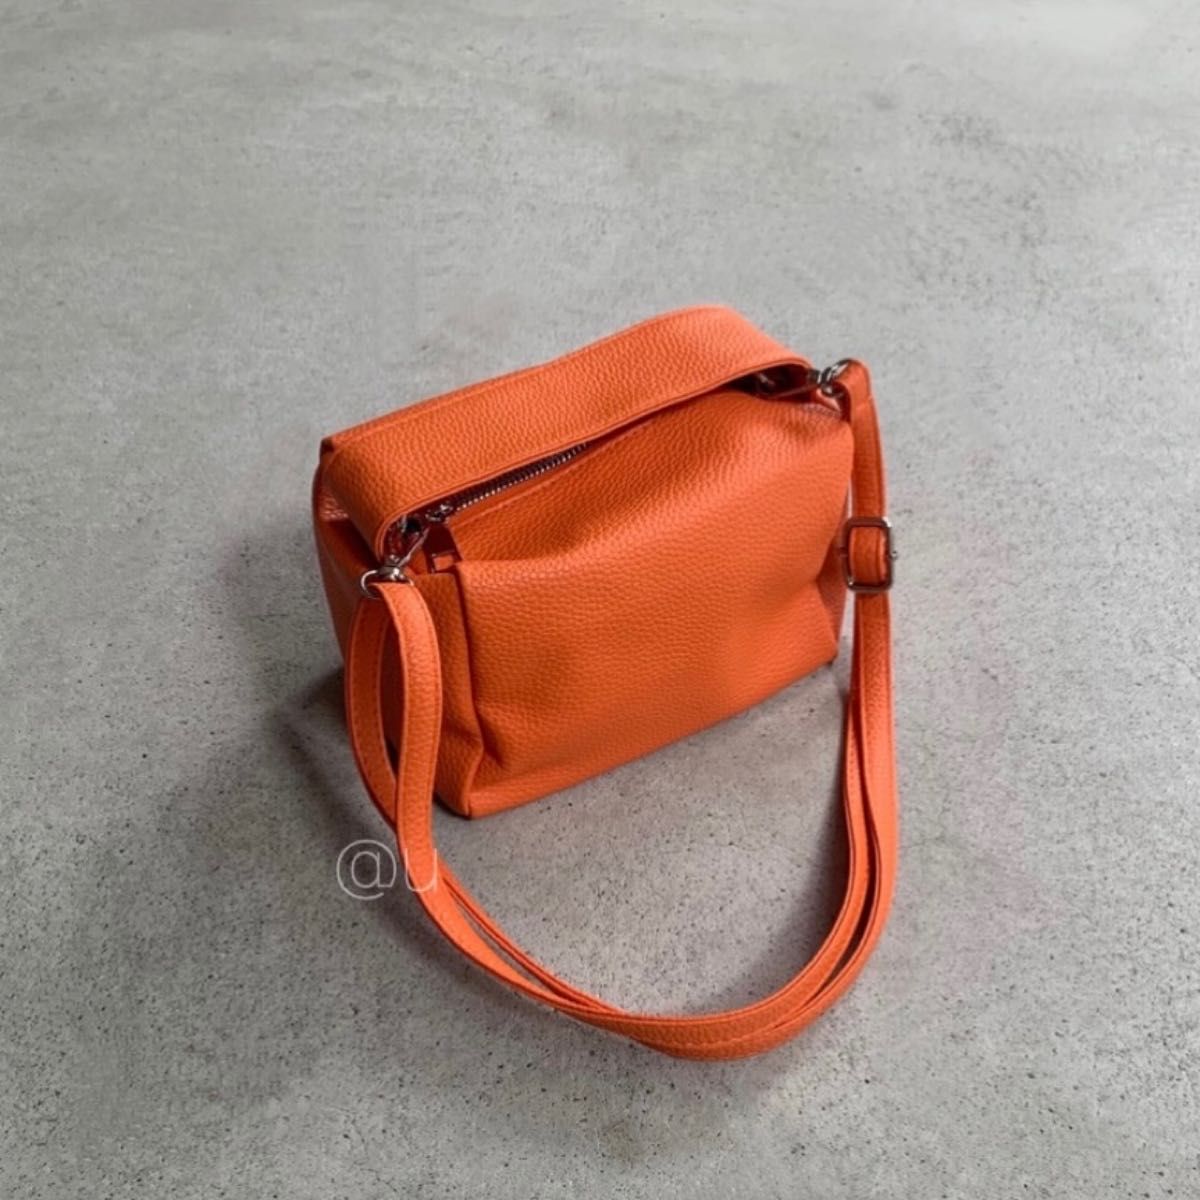 ◎スクエアボックス ショルダーバッグ 2way オレンジ 斜めがけ ハンドバッグ 新品未使用 美品 マット レザー 鞄 bag 